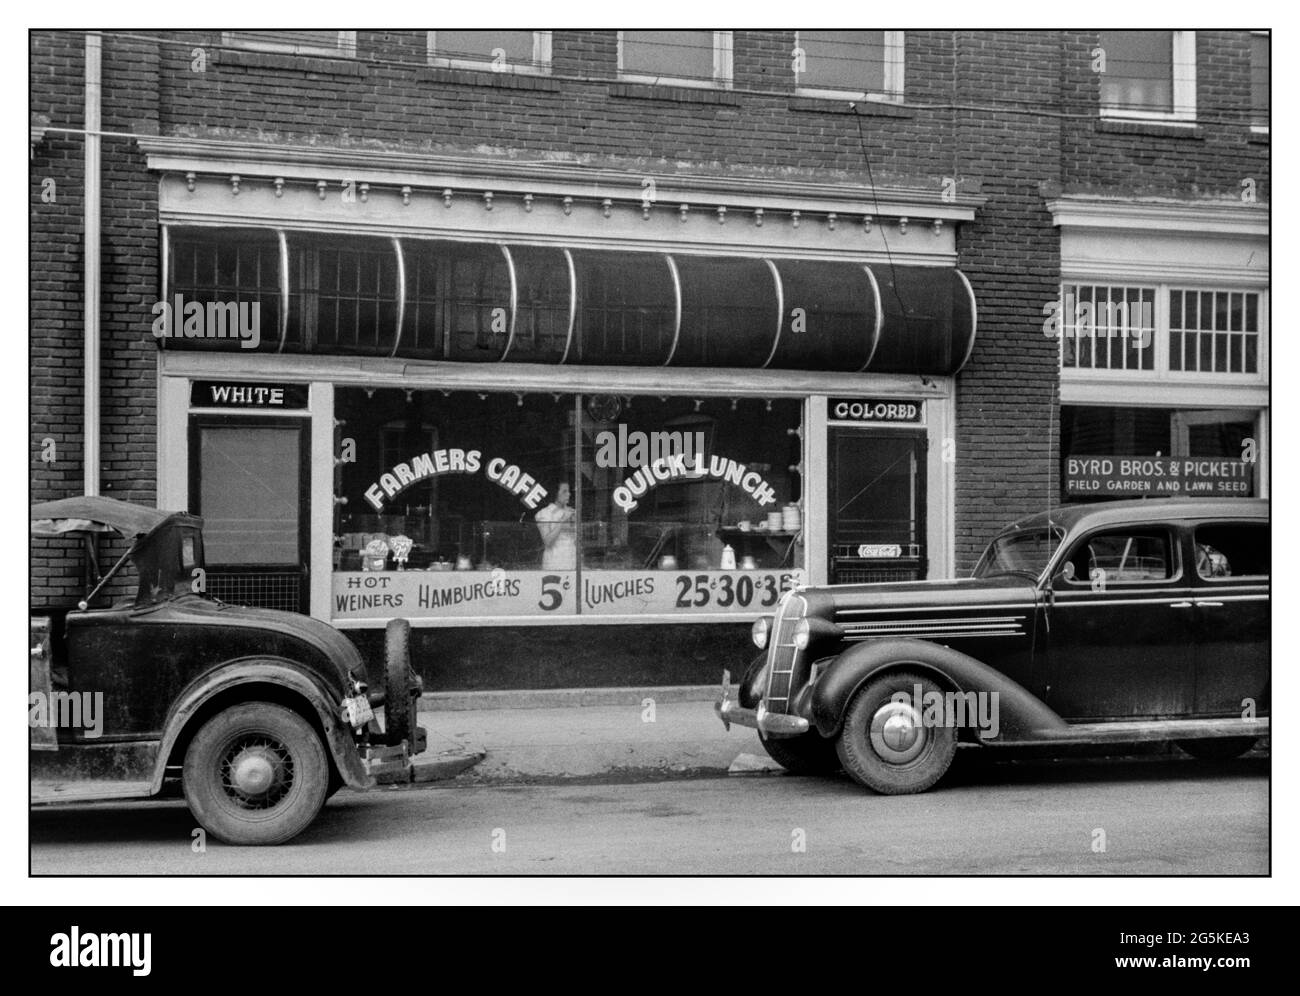 1930s discrimination raciale ségrégation restaurant café entrées USA café restaurant près du marché du tabac, Durham, Caroline du Nord deux portes d'entrée au café, une pour 'blanc' et une pour 'coloré' des années 1930 Etats-Unis Amérique du Sud-est Banque D'Images